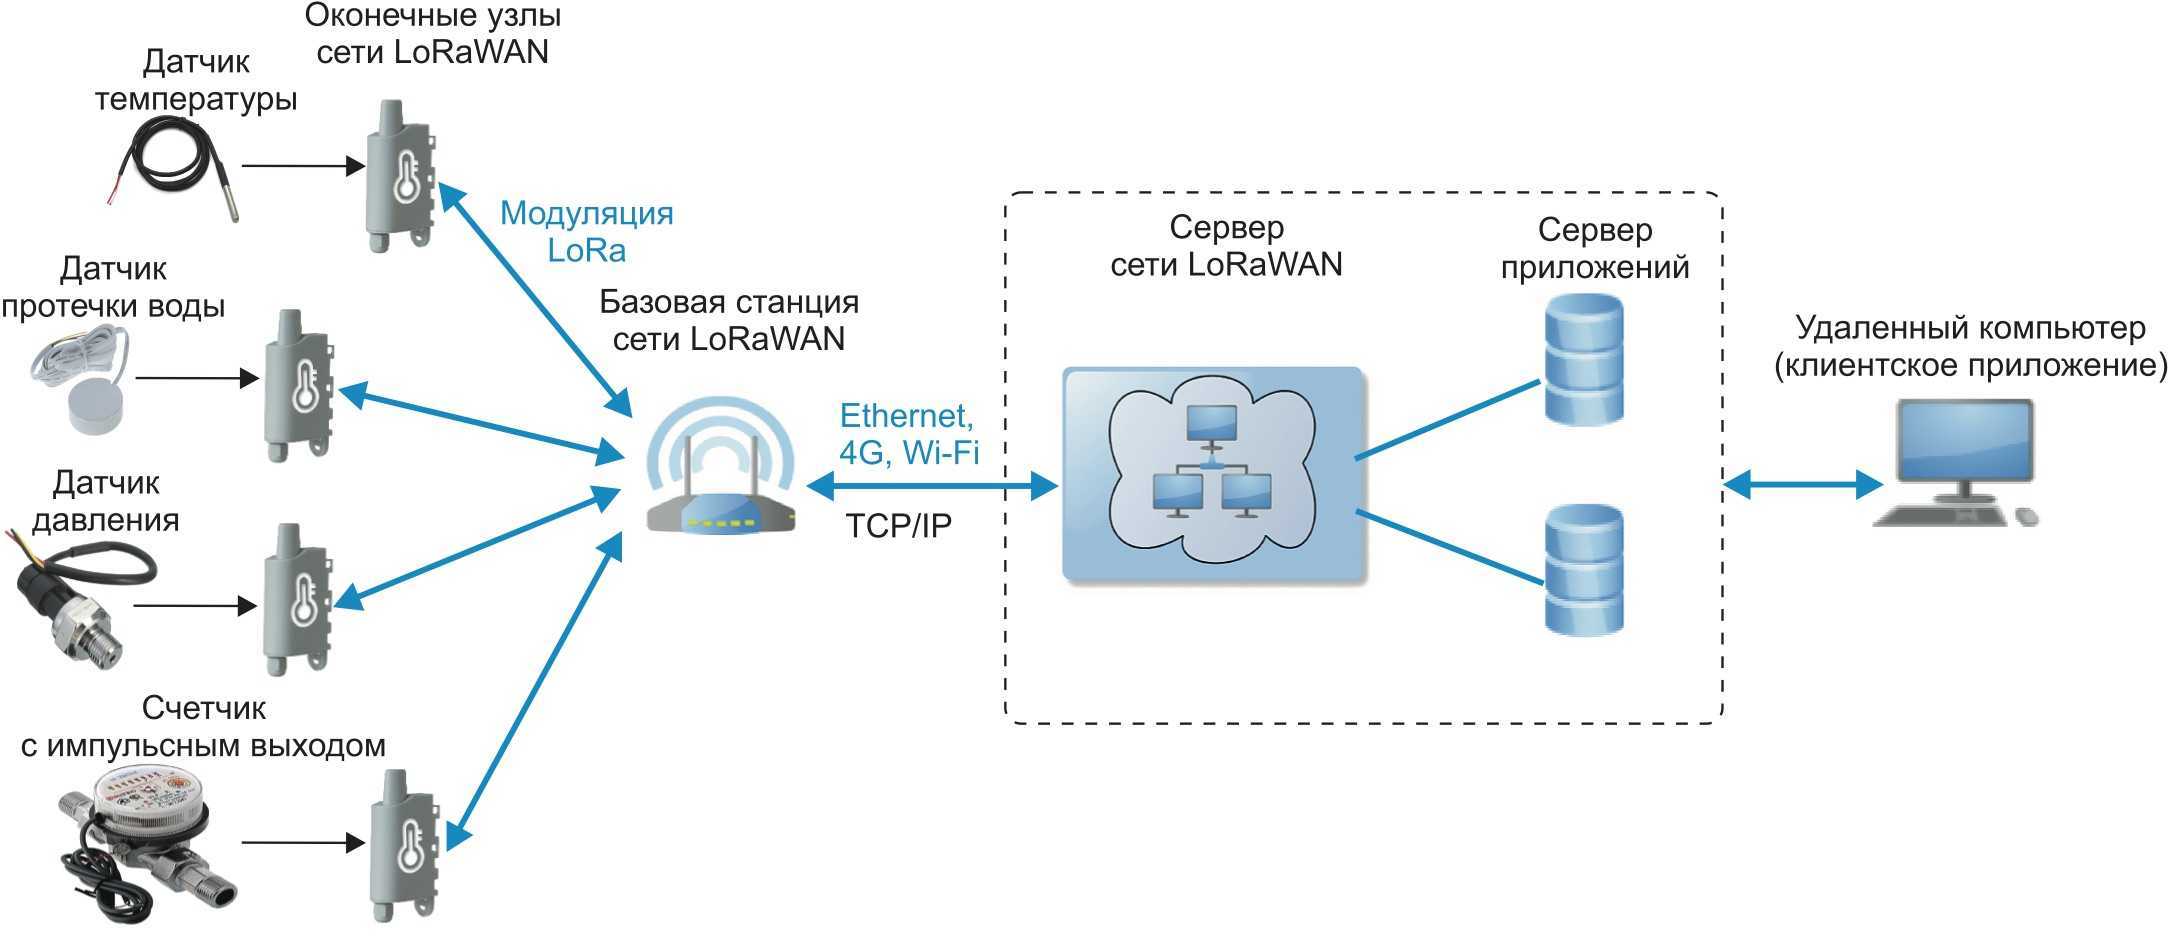 Технология широкополосного доступа - русские блоги